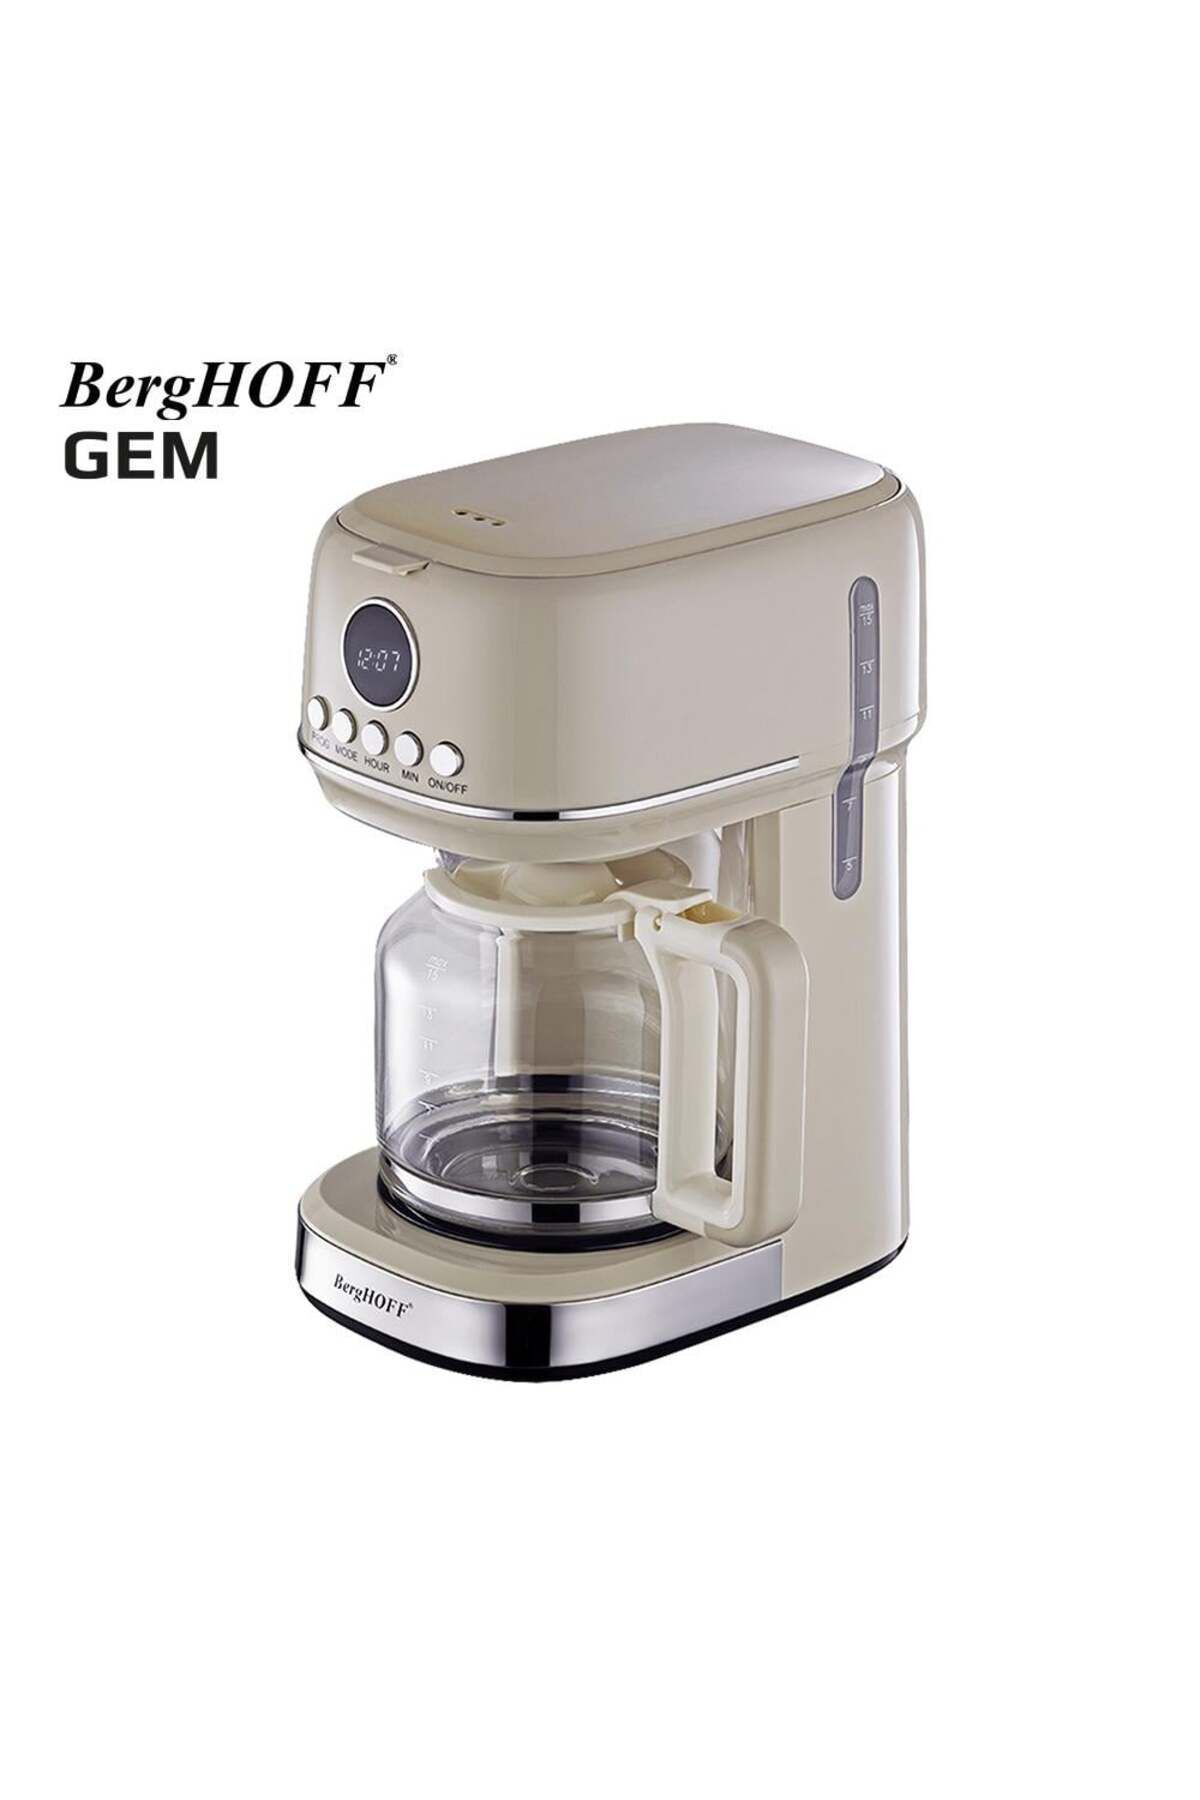 Berghoff Gem Retro 15 Bardak Vanilya Krem Rengi Filtre Kahve Makinesi